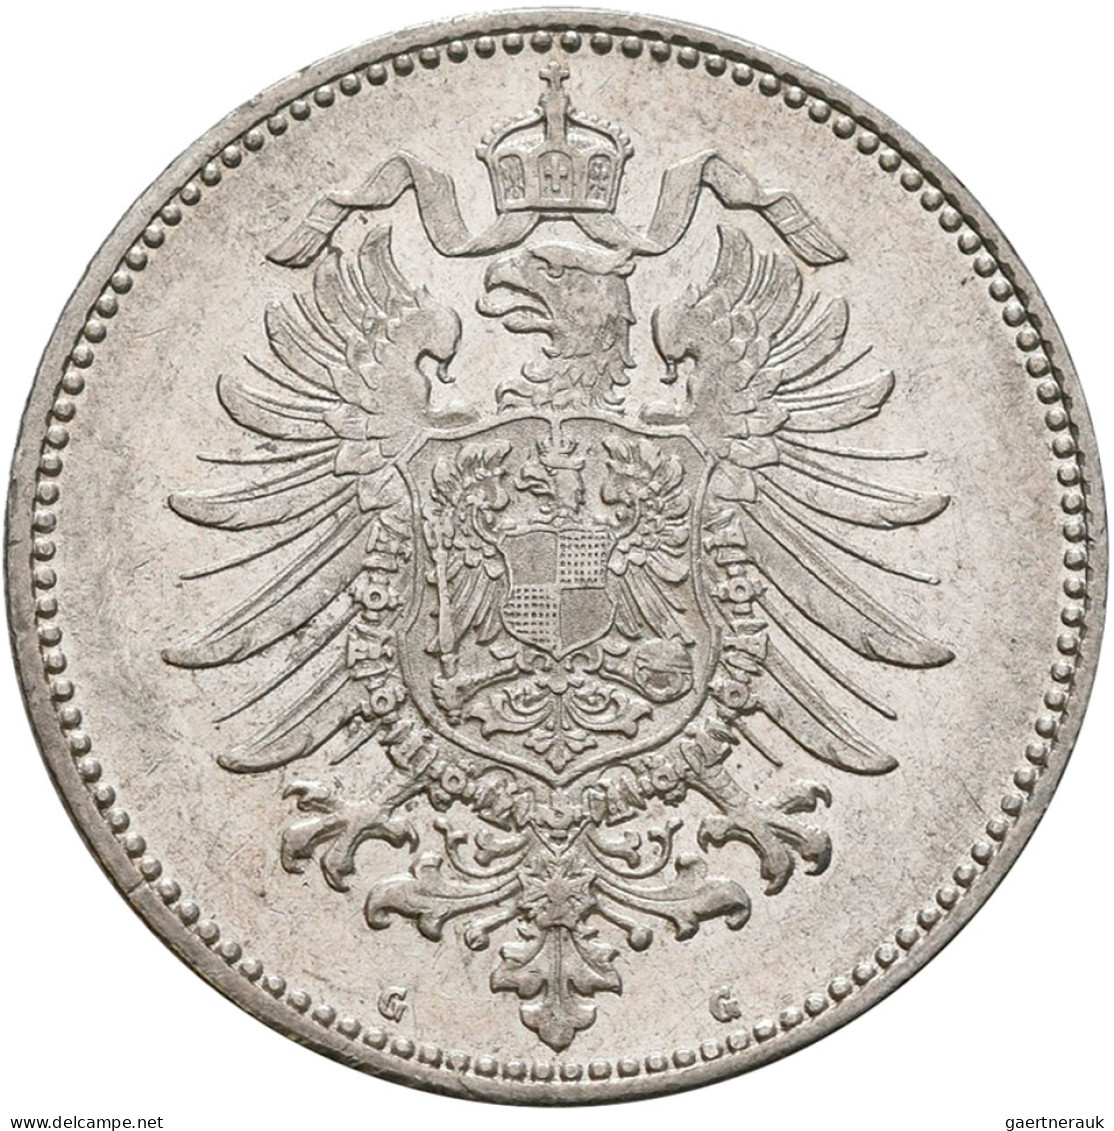 Umlaufmünzen 1 Pf. - 1 Mark: 1 Mark 1882 G, Jaeger 9. Besserer Jahrgang, Gute Er - Taler Et Doppeltaler